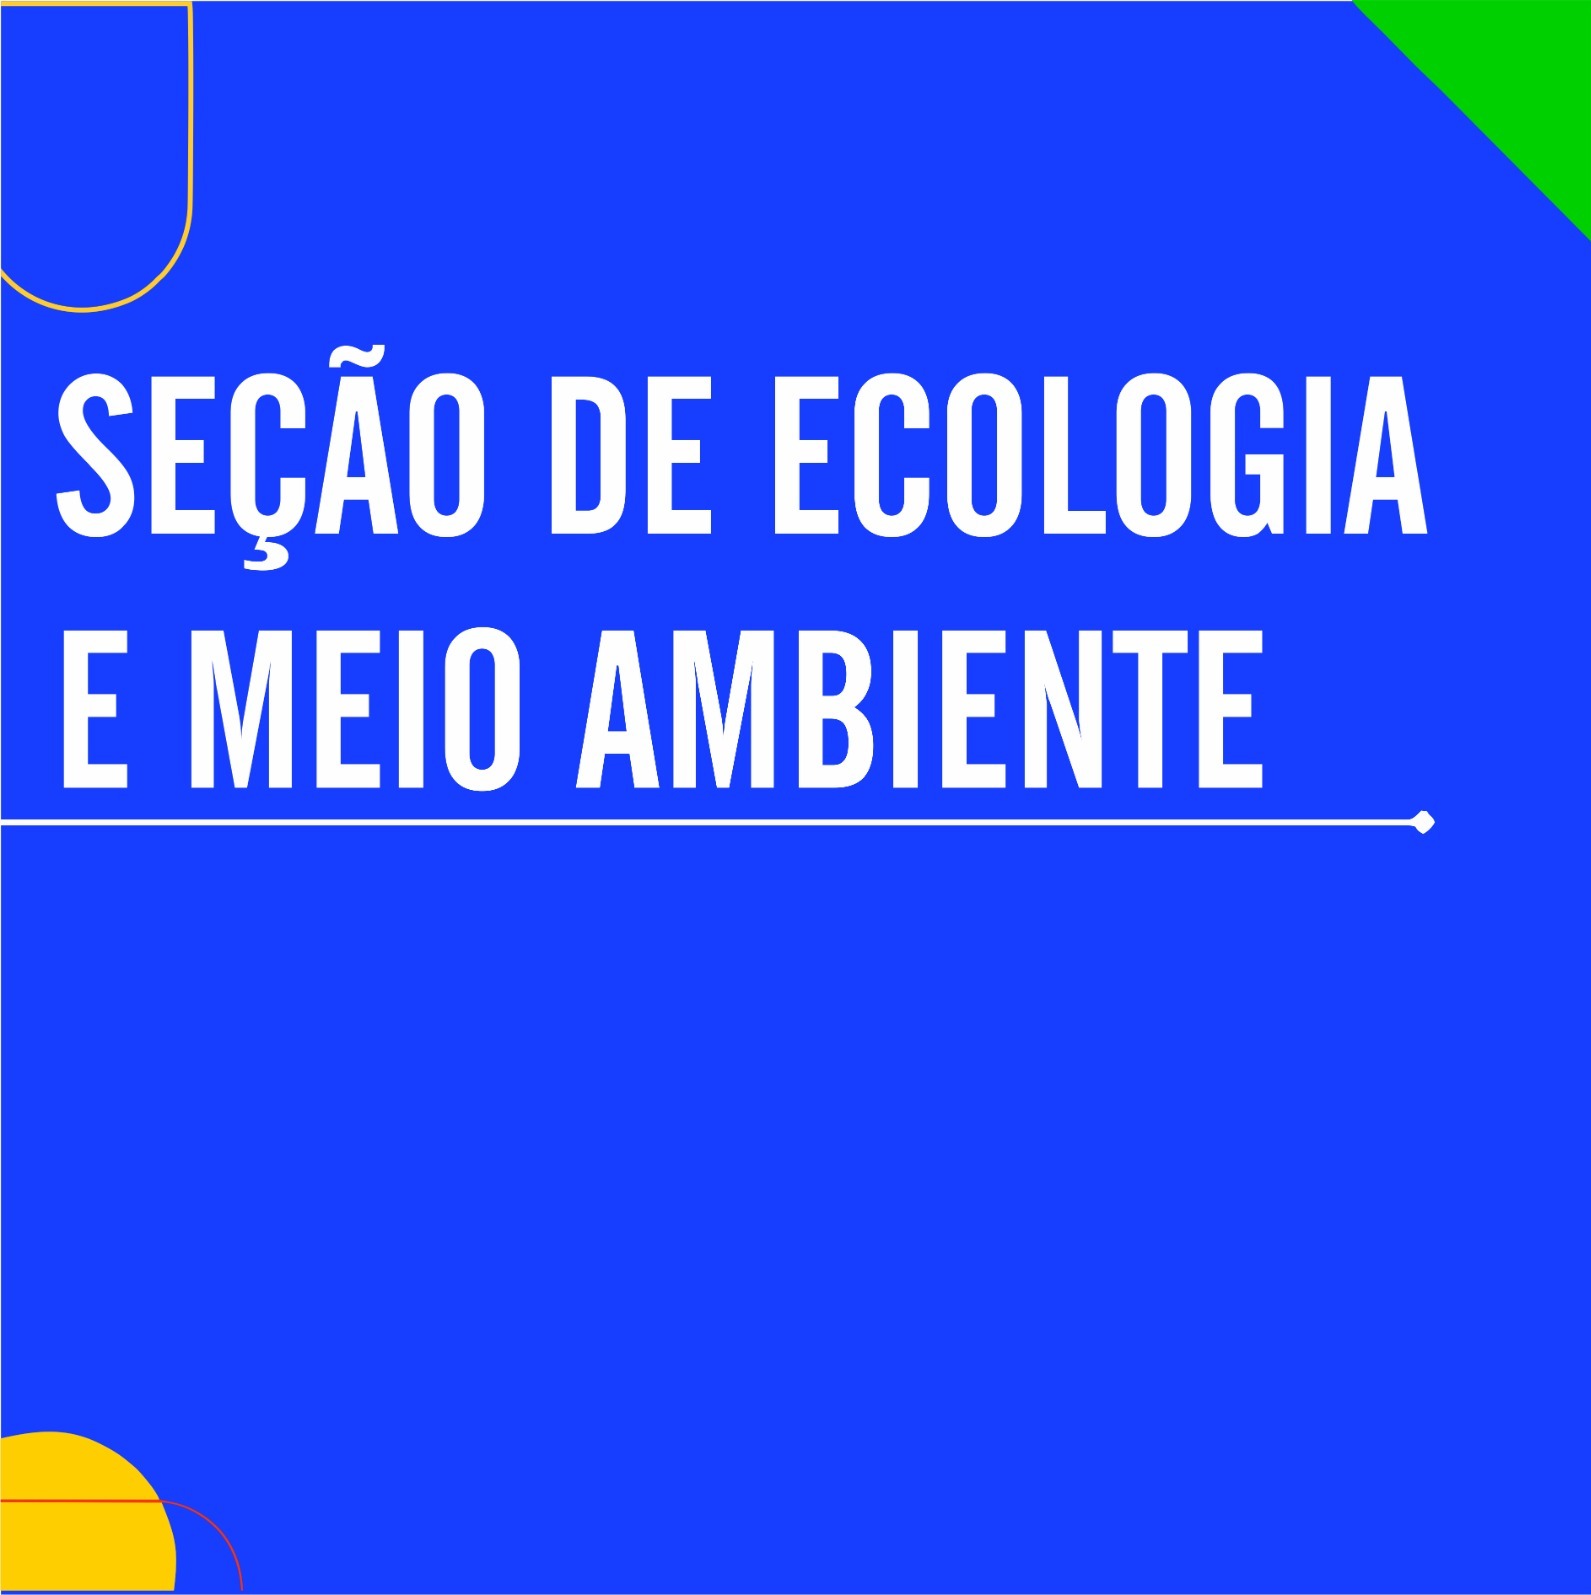 Seção de Ecologia e Meio Ambiente